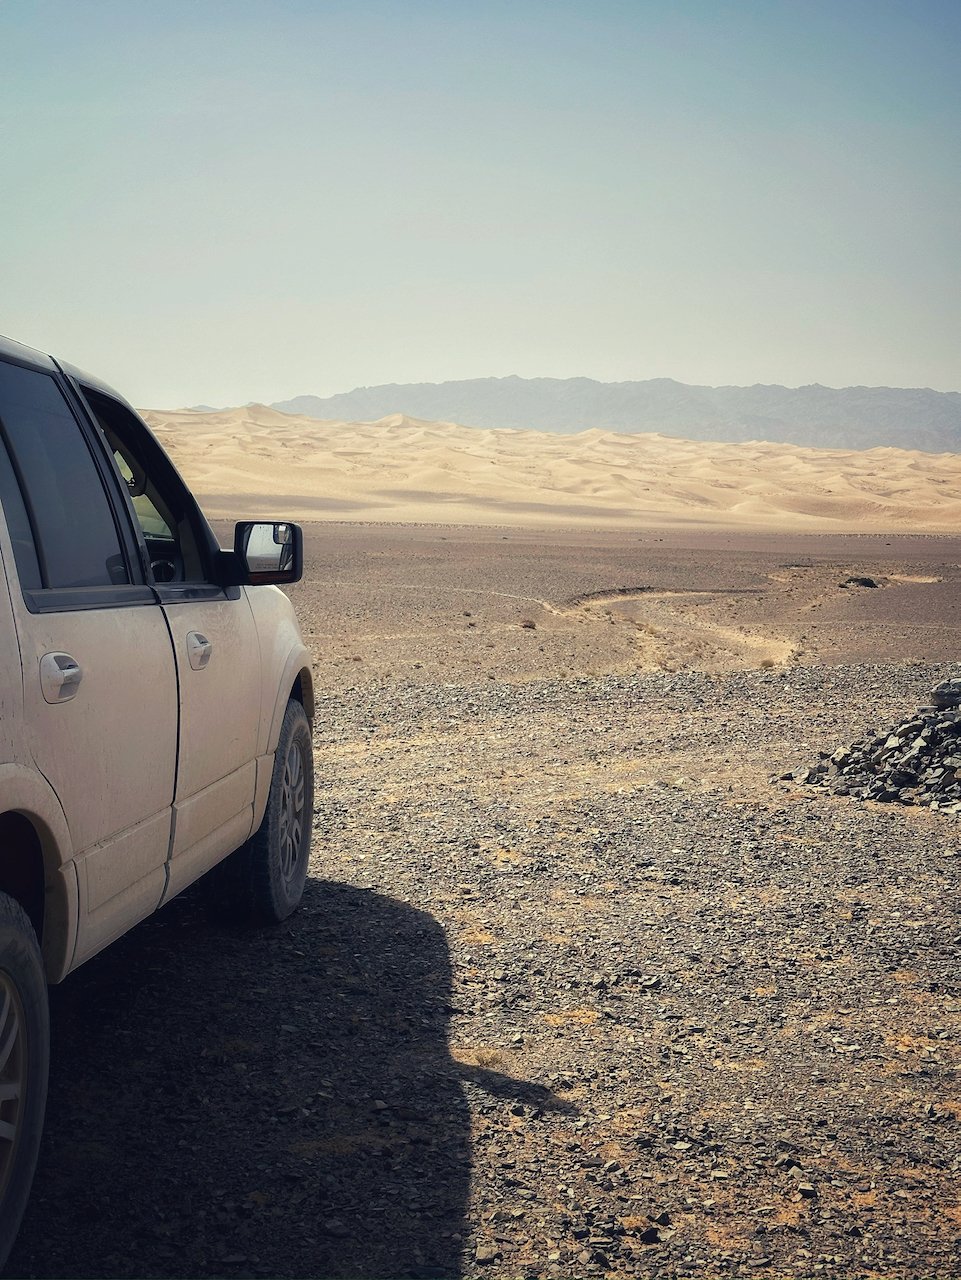 Sand Dunes Gobi Desert Ford Expedition.jpeg